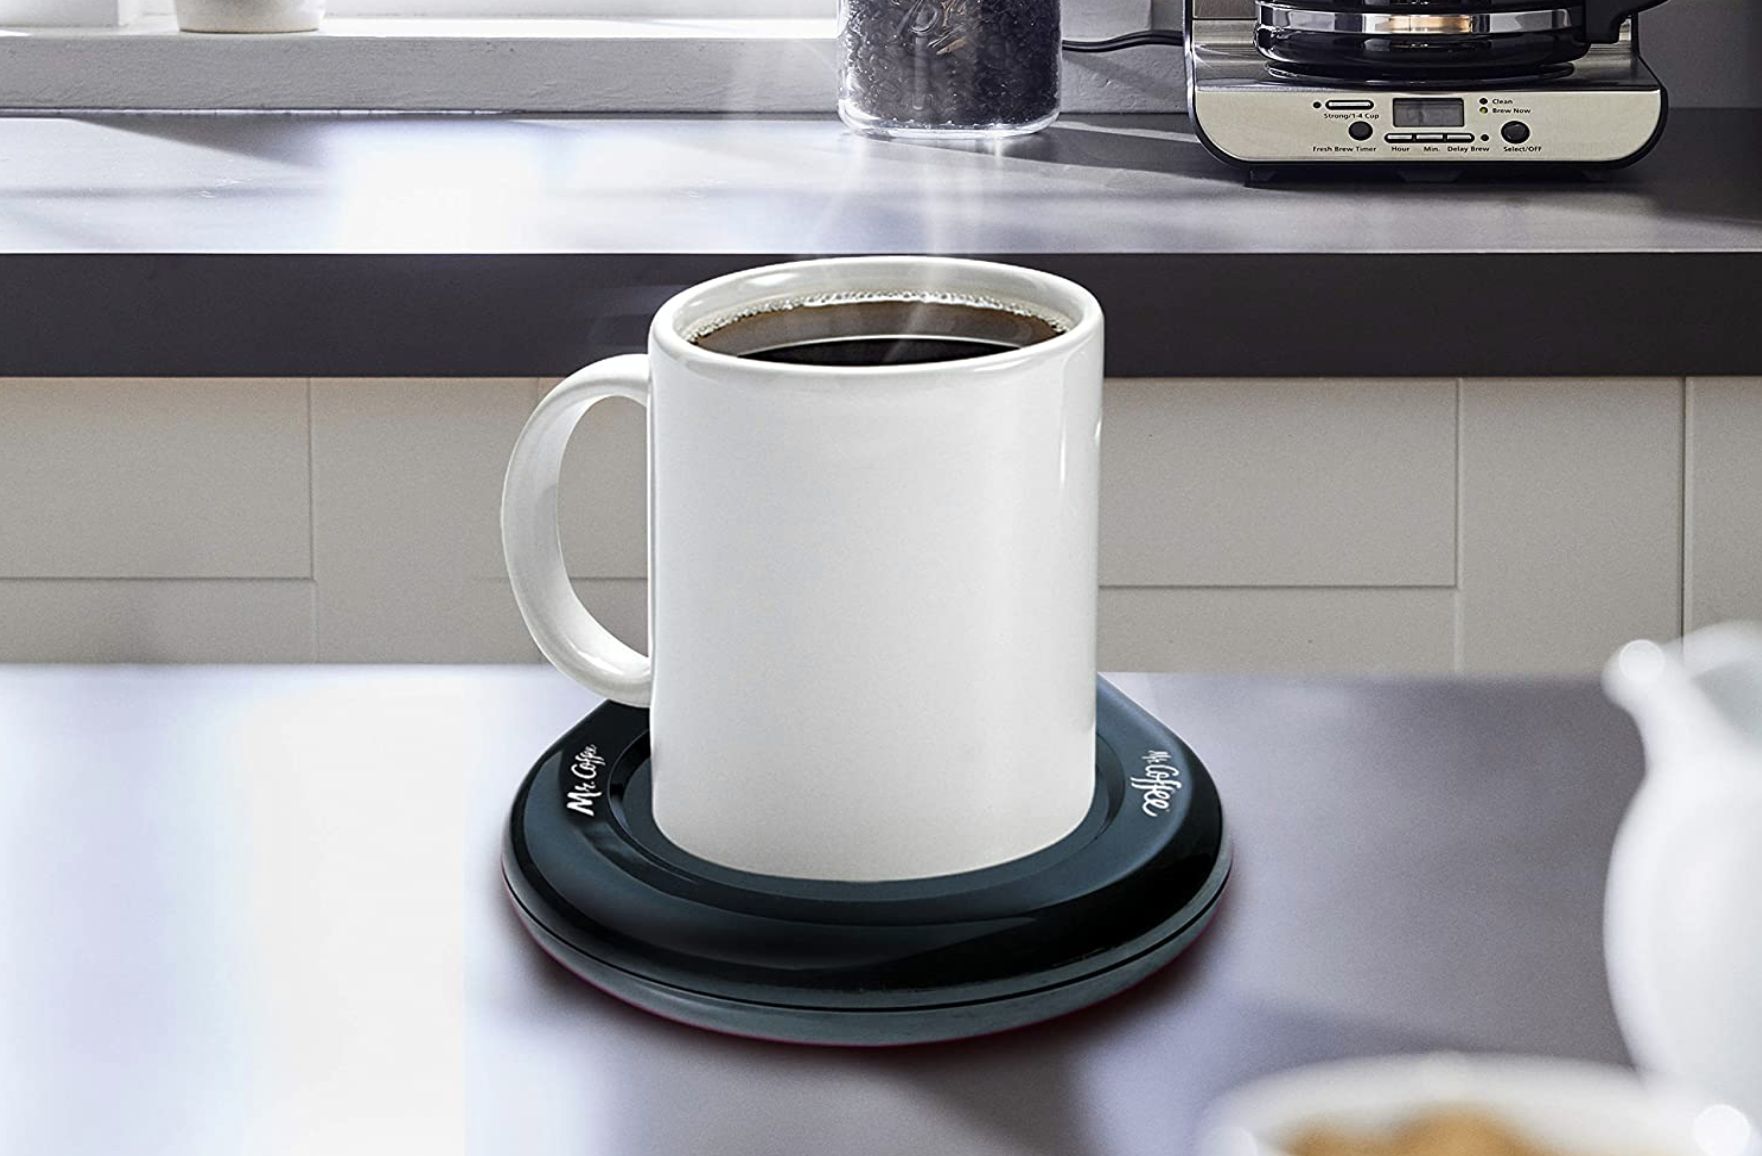 A cup of coffee warmed by a black circular mug warming platform underneath it 